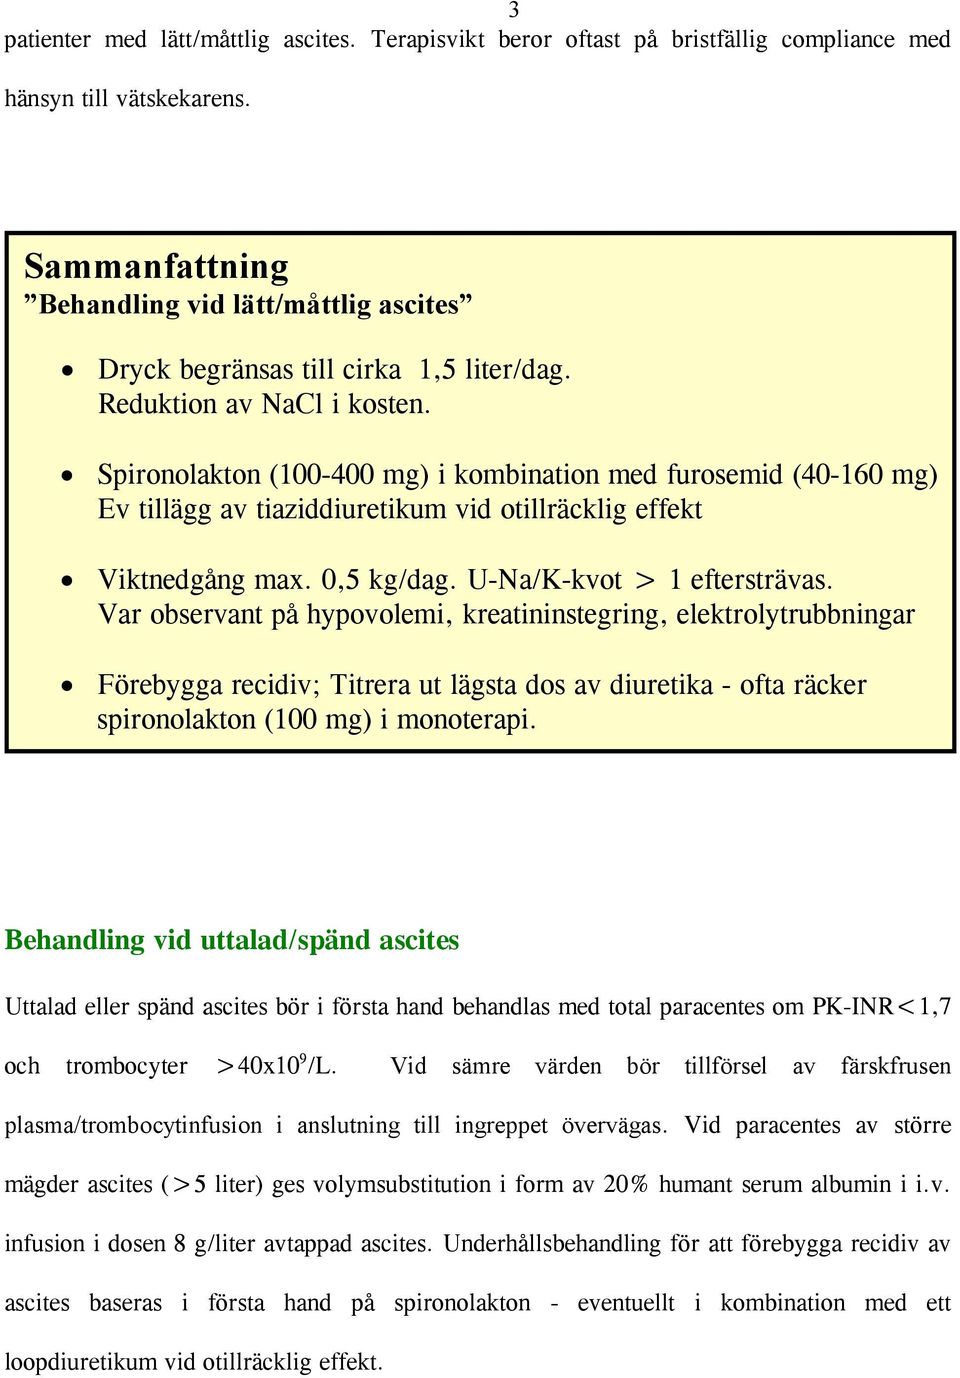 Spironolakton (100-400 mg) i kombination med furosemid (40-160 mg) Ev tillägg av tiaziddiuretikum vid otillräcklig effekt Viktnedgång max. 0,5 kg/dag. U-Na/K-kvot > 1 eftersträvas.